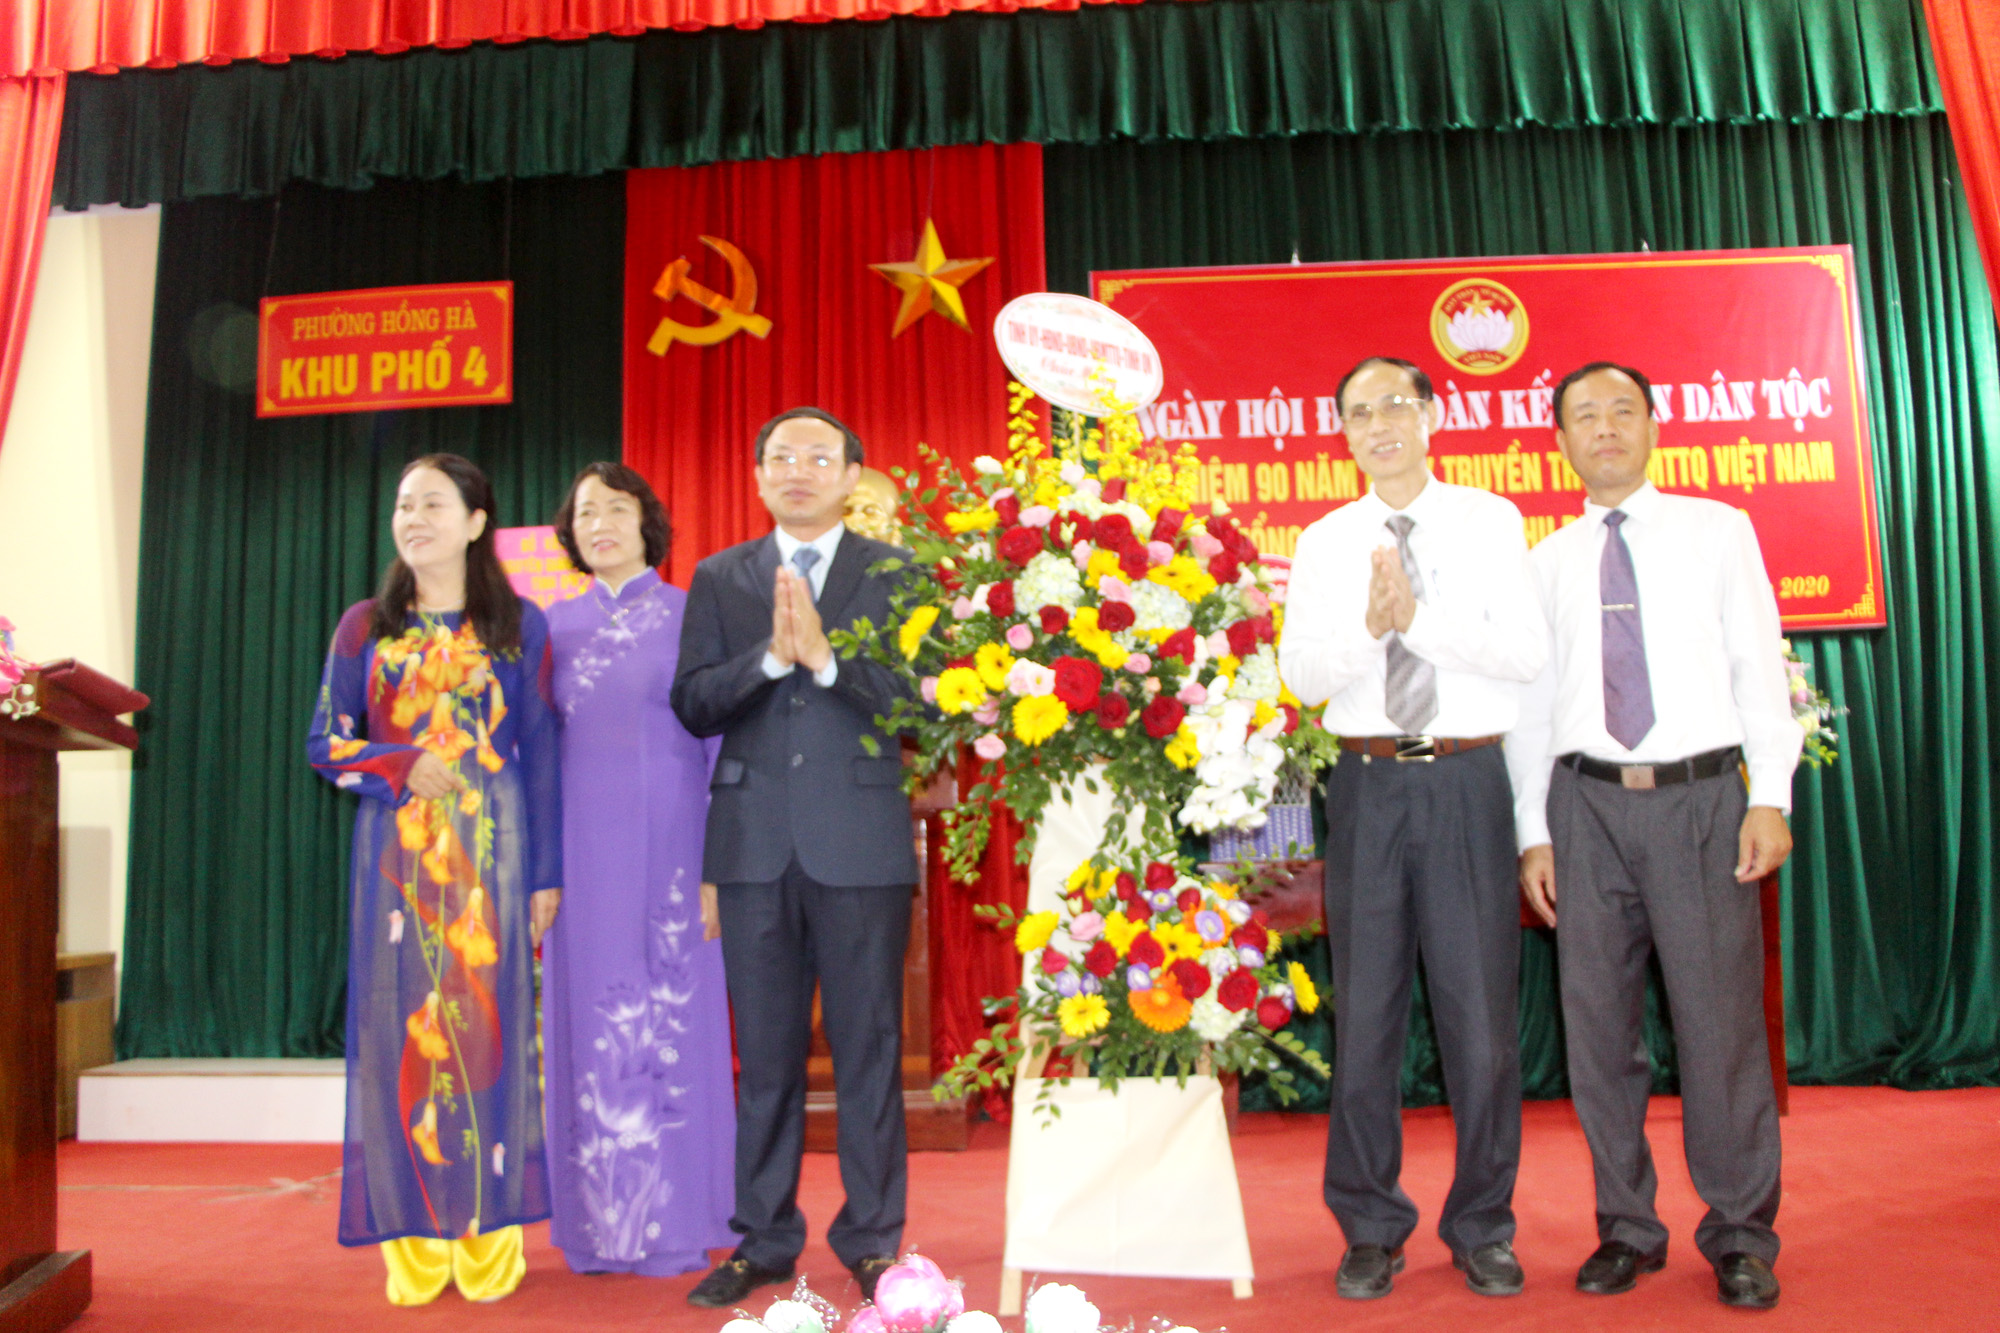 Đồng chí Nguyễn Xuân Ký, Bí thư Tỉnh ủy, Chủ tịch HĐND tỉnh, tặng hoa chúc mừng khu phố 4.